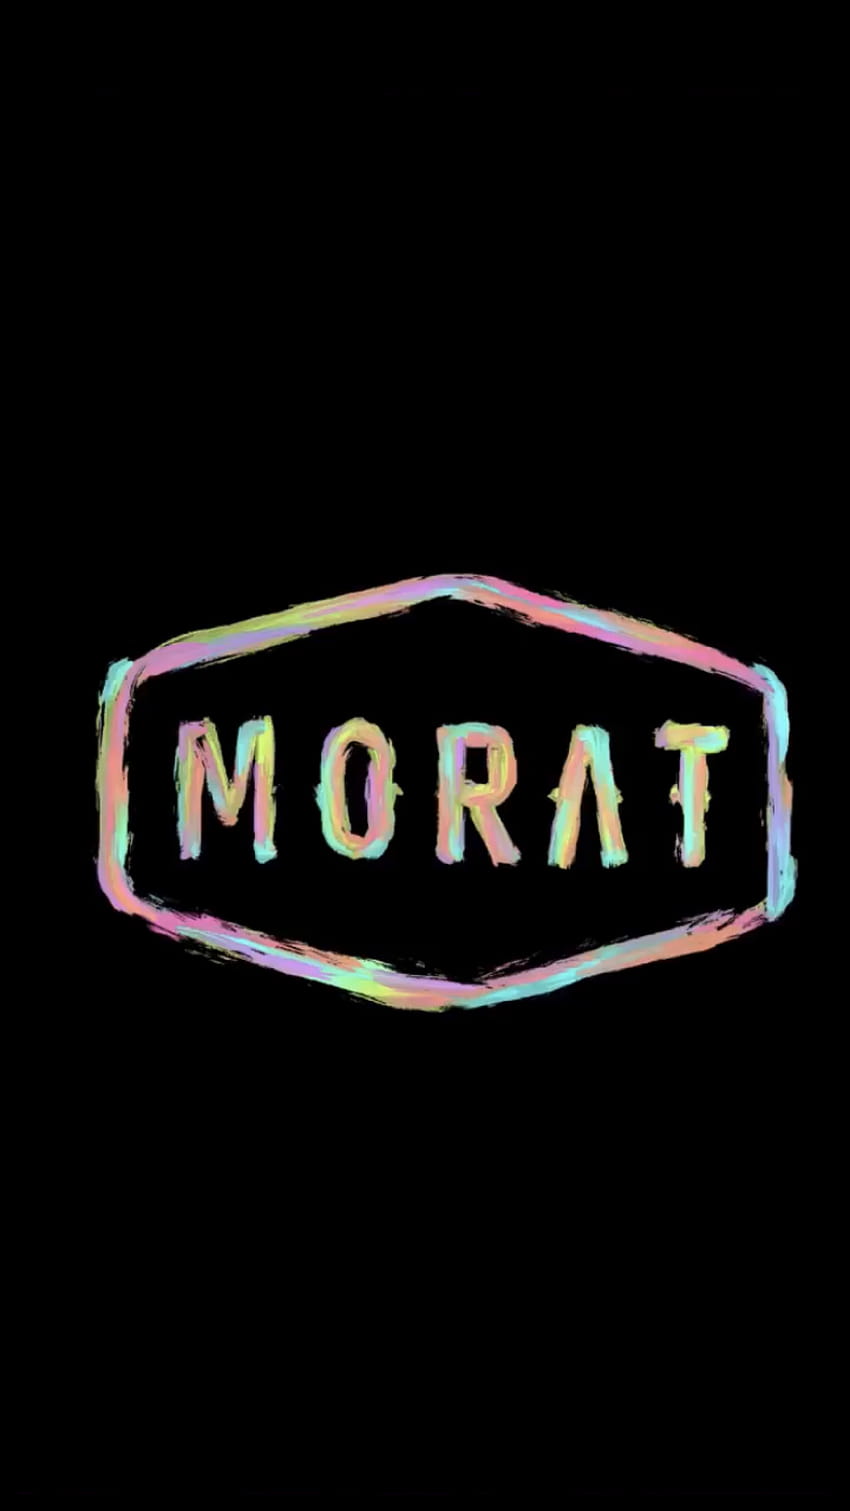 92 ideas de Los mejores fondos de Morat HD phone wallpaper | Pxfuel